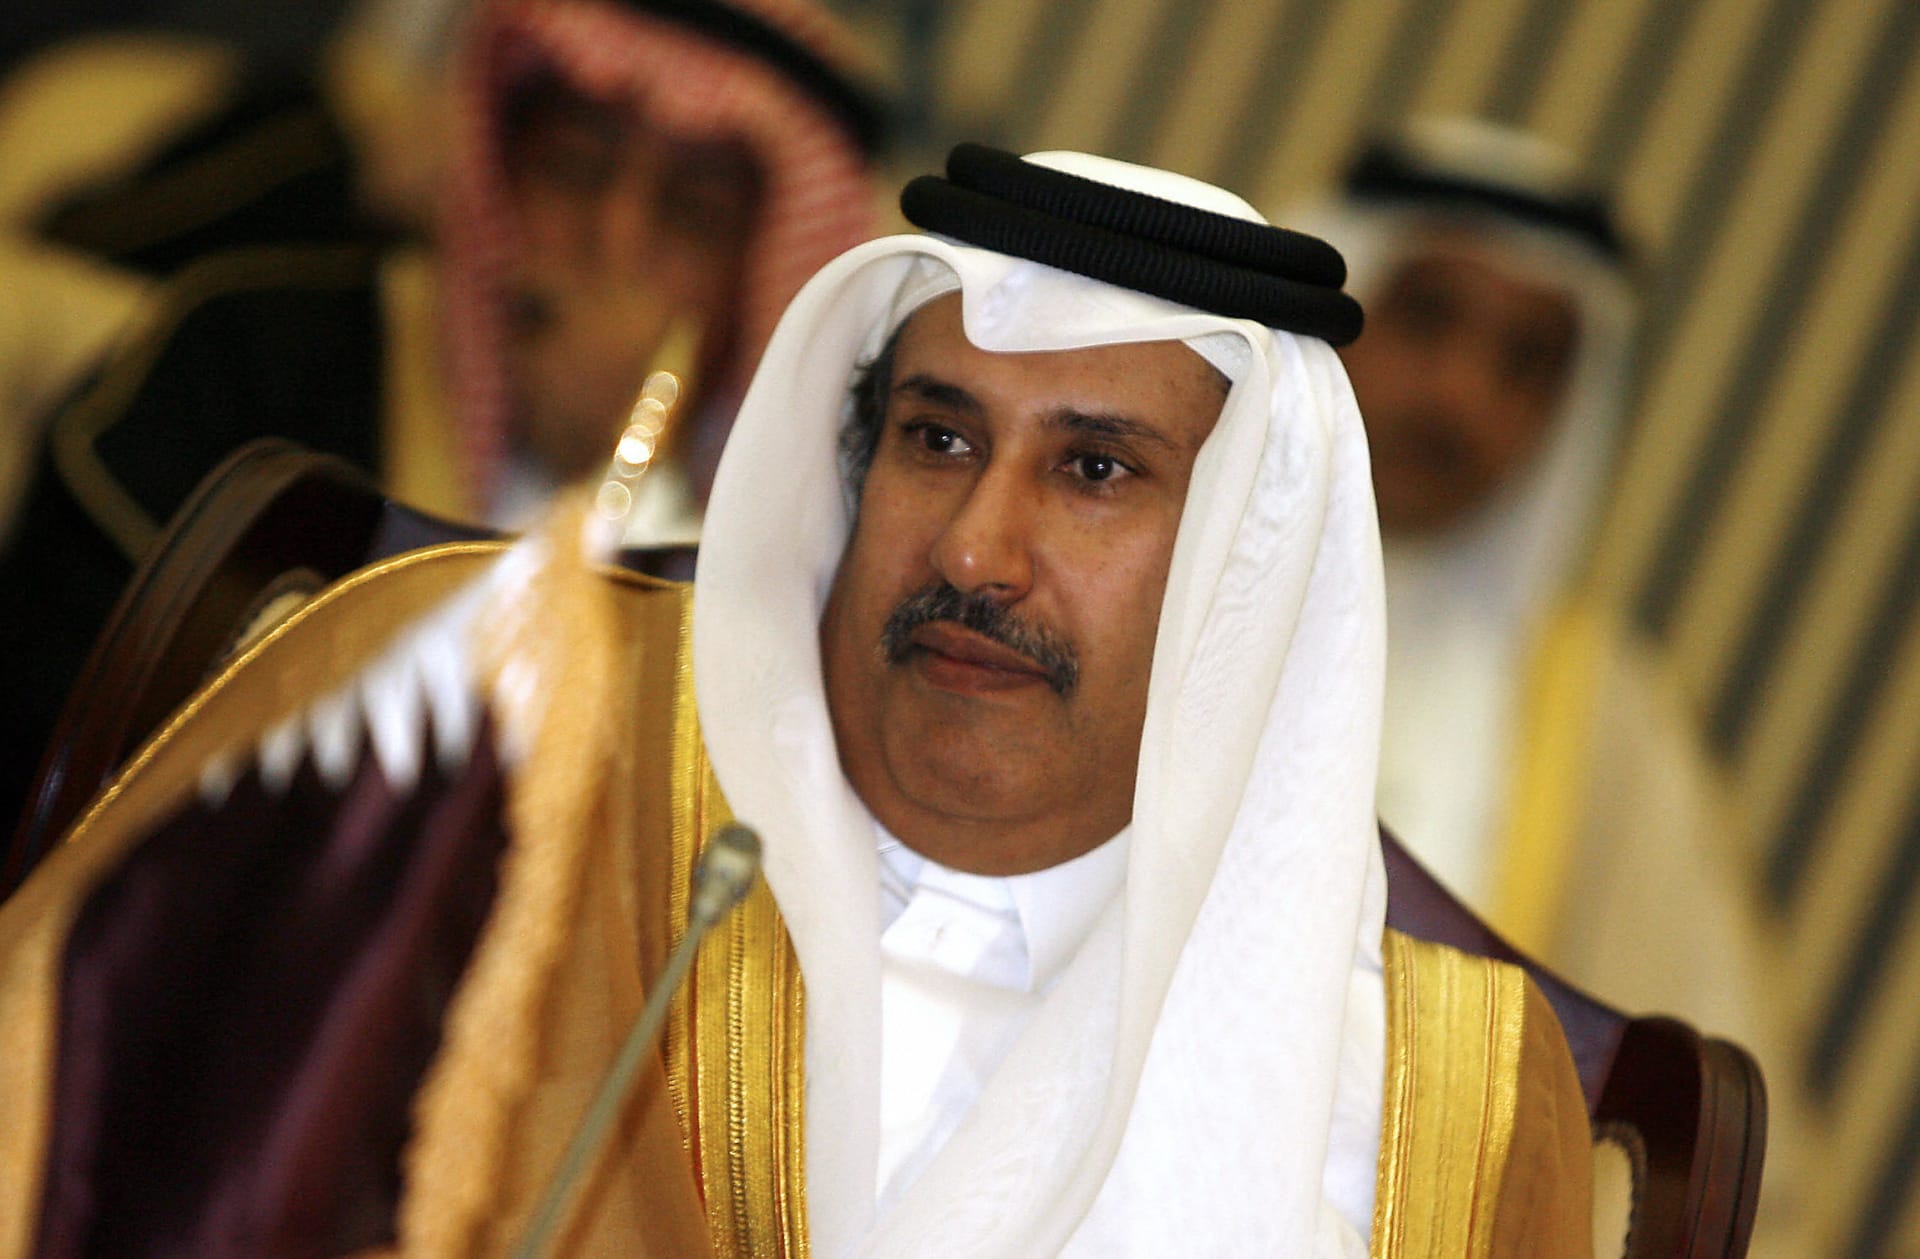 قطر.. حمد بن جاسم يعلق على إعلان محمد بن سلمان مشروع ربط الهند بأوروبا عبر الشرق الأوسط